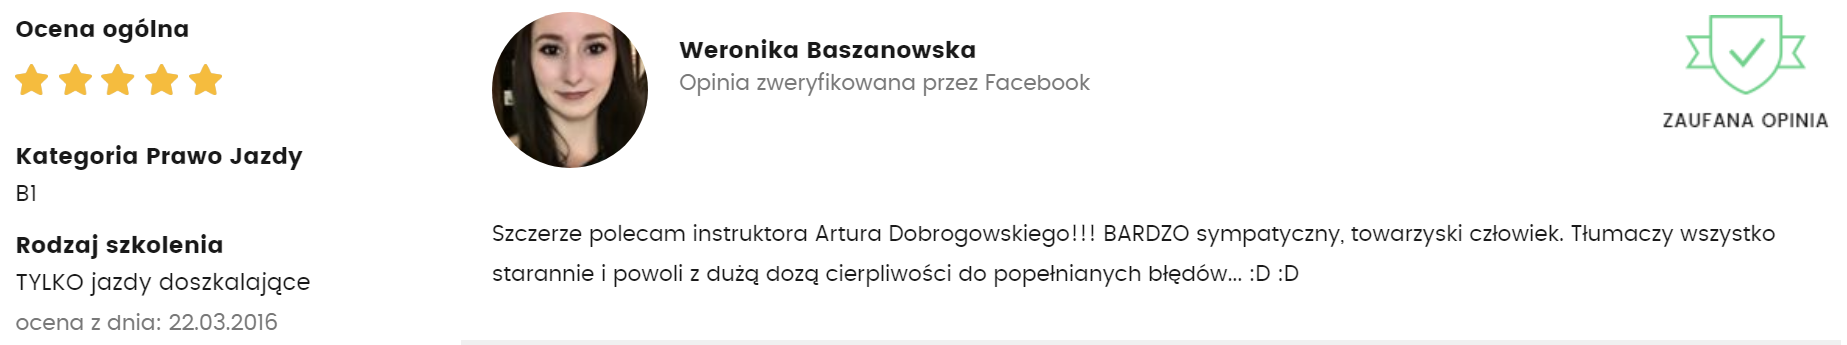 weronika baszanowska